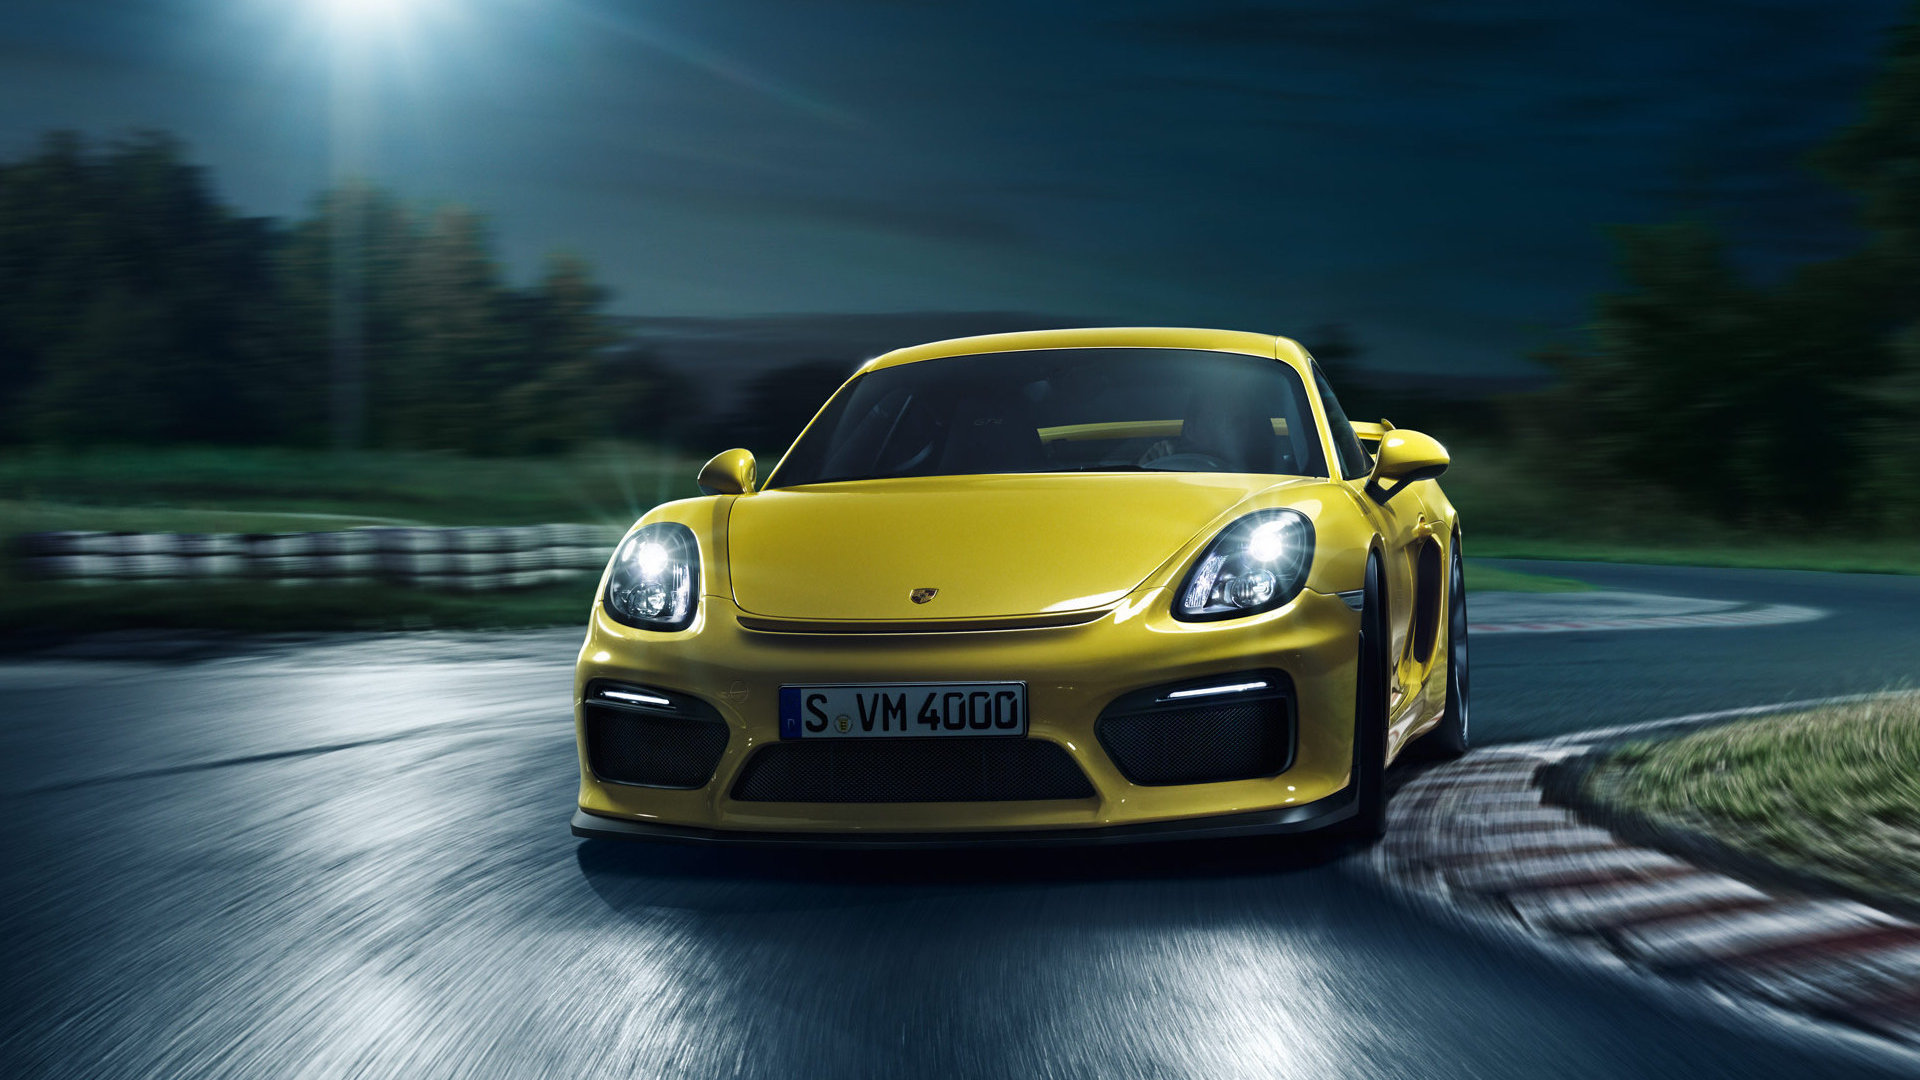 Best Porsche Cayman Gt4 Wallpaper Id - Sports Car - HD Wallpaper 